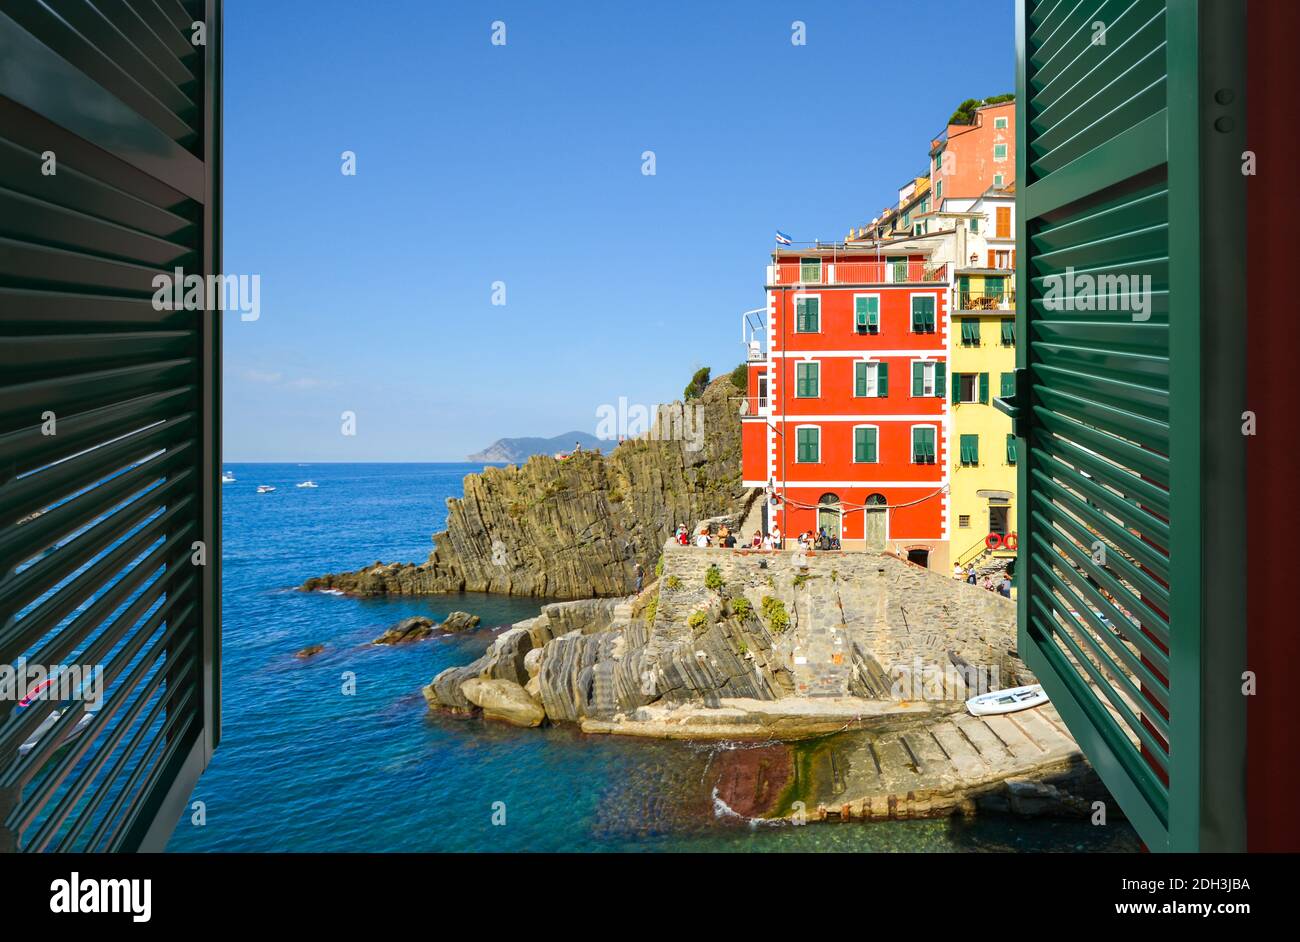 Vue à travers une fenêtre ouverte du village italien de Riomaggiore, qui fait partie des Cinque Terre sur la côte ligure du nord de l'Italie Banque D'Images